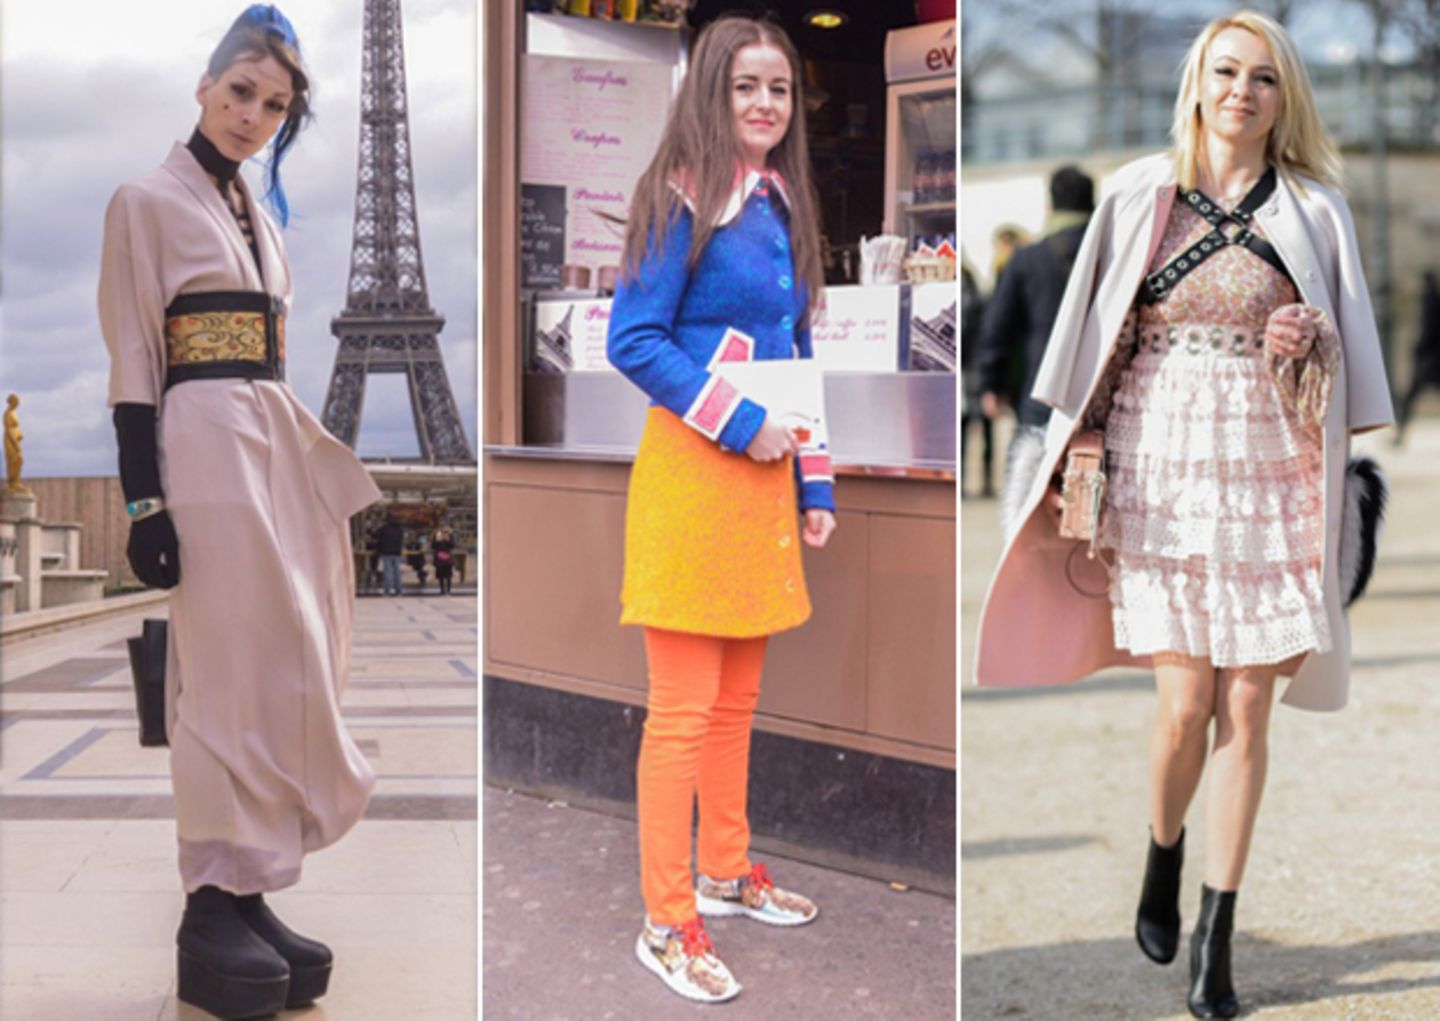 Auf der Paris Fashion Week zählt nicht nur das, was auf den Schauen gezeigt wird. Auch die Fashionistas auf der Straße geben alles, um von Streetstyle-Fotografen vor und nach den Shows geknipst zu werden. Das hat wenig mit Zufall zu tun. Viel mehr wird sich aufgebrezelt, was das Zeug hält, um aus der Masse als Mode-Mensch herauszustechen. Oft kommen dabei inspirierende Looks zustande. Dass das aber nicht immer gut gehen muss, zeigen wir euch hier in unserer Galerie der sechs schrägsten Looks aus der Mode-Metropole.